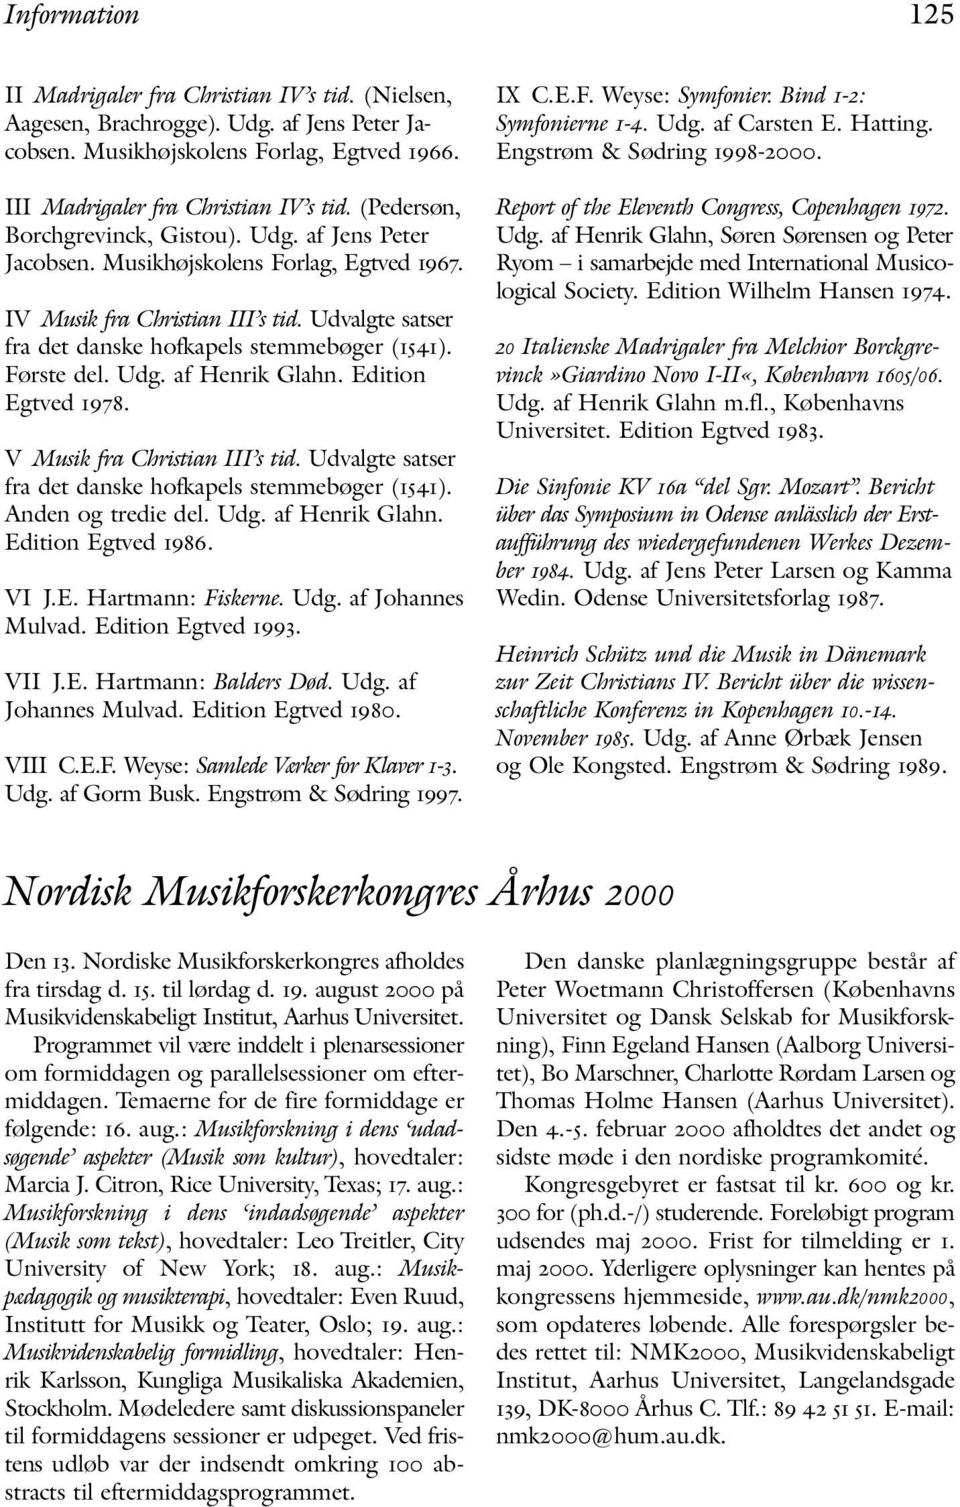 Dansk Selskab for Musikforskning PDF Free Download